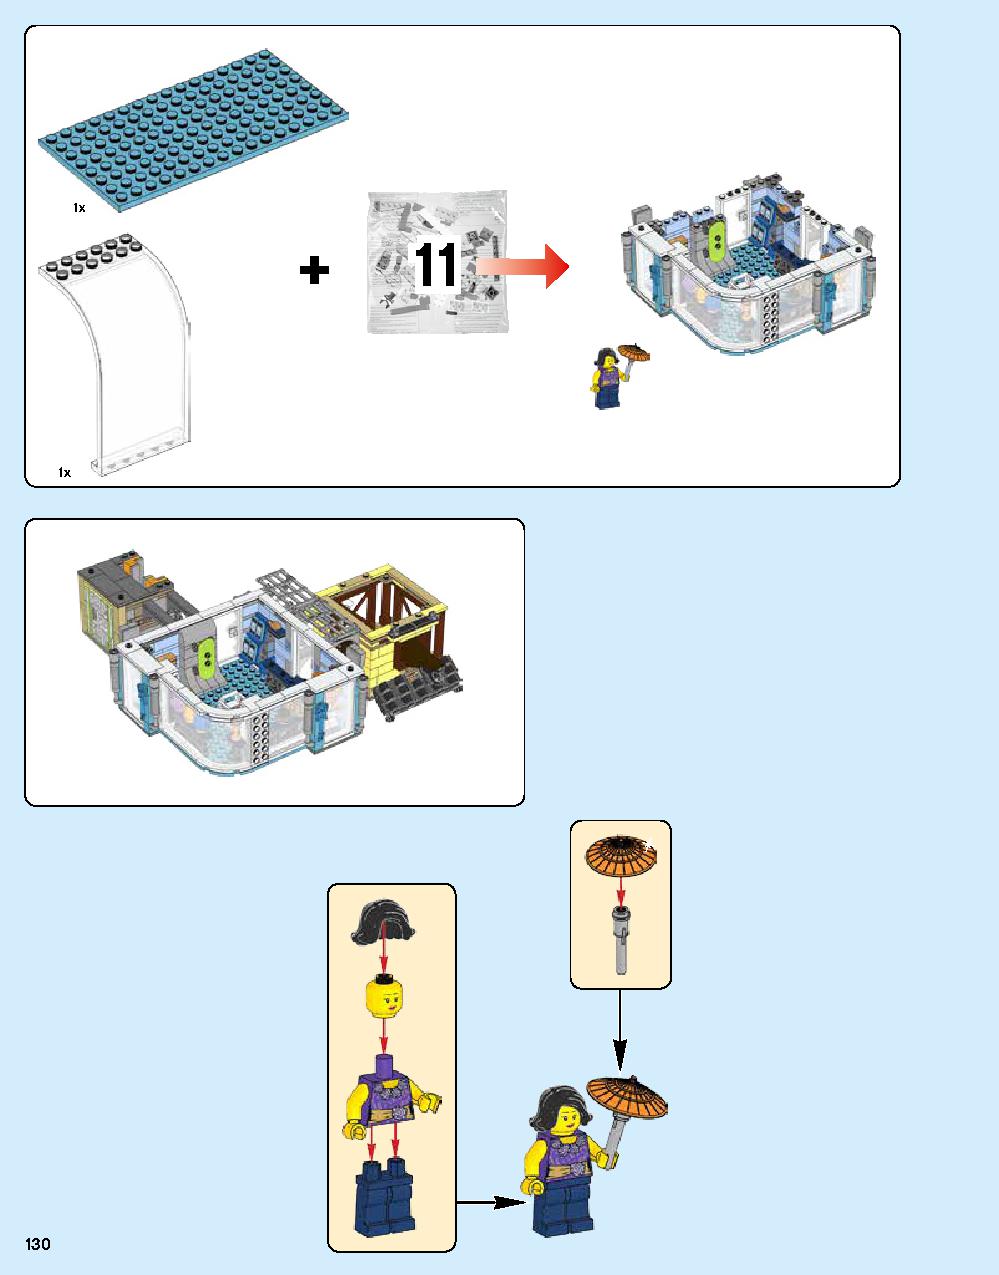 ニンジャゴー シティ 70620 レゴの商品情報 レゴの説明書・組立方法 130 page